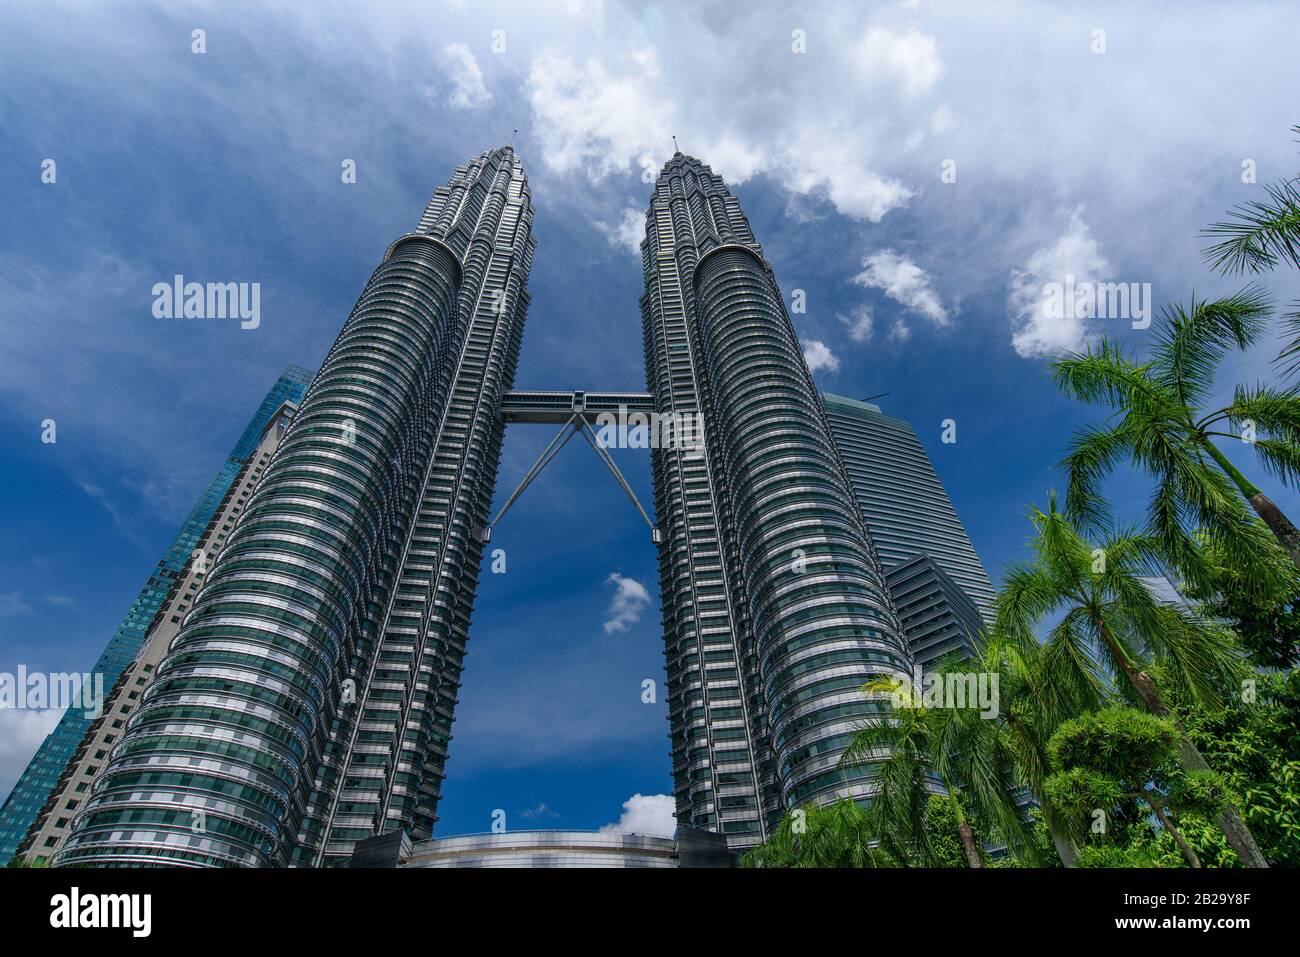 Petronas Twin Towers, i più famosi grattacieli gemelli di Kuala Lumpur, Malesia Foto Stock